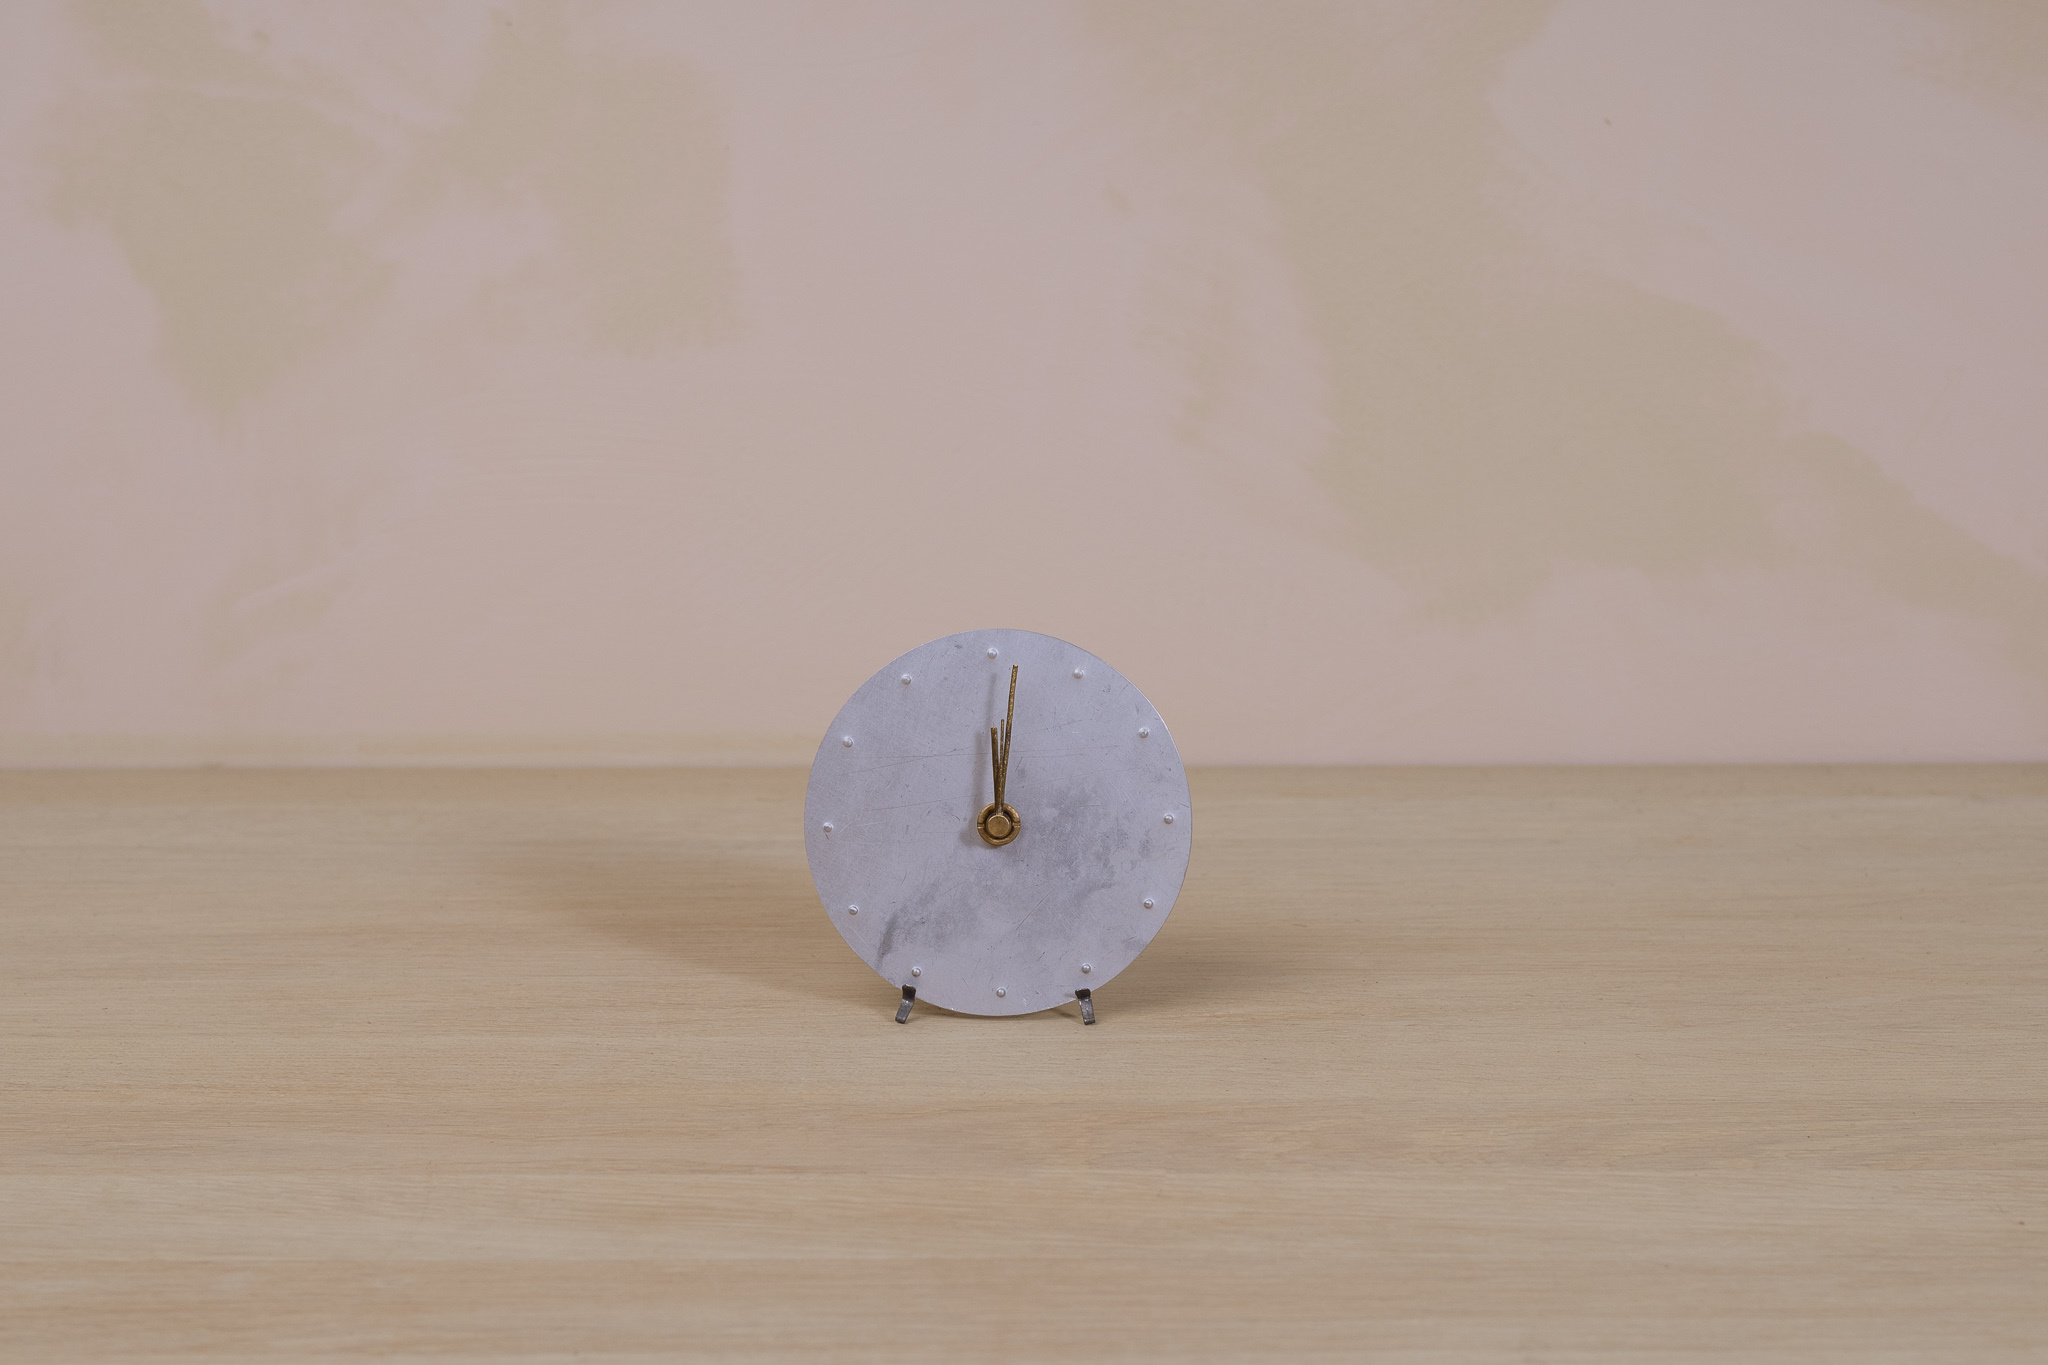 Kentaro Masumitsu Small Aluminum Clock with Stand